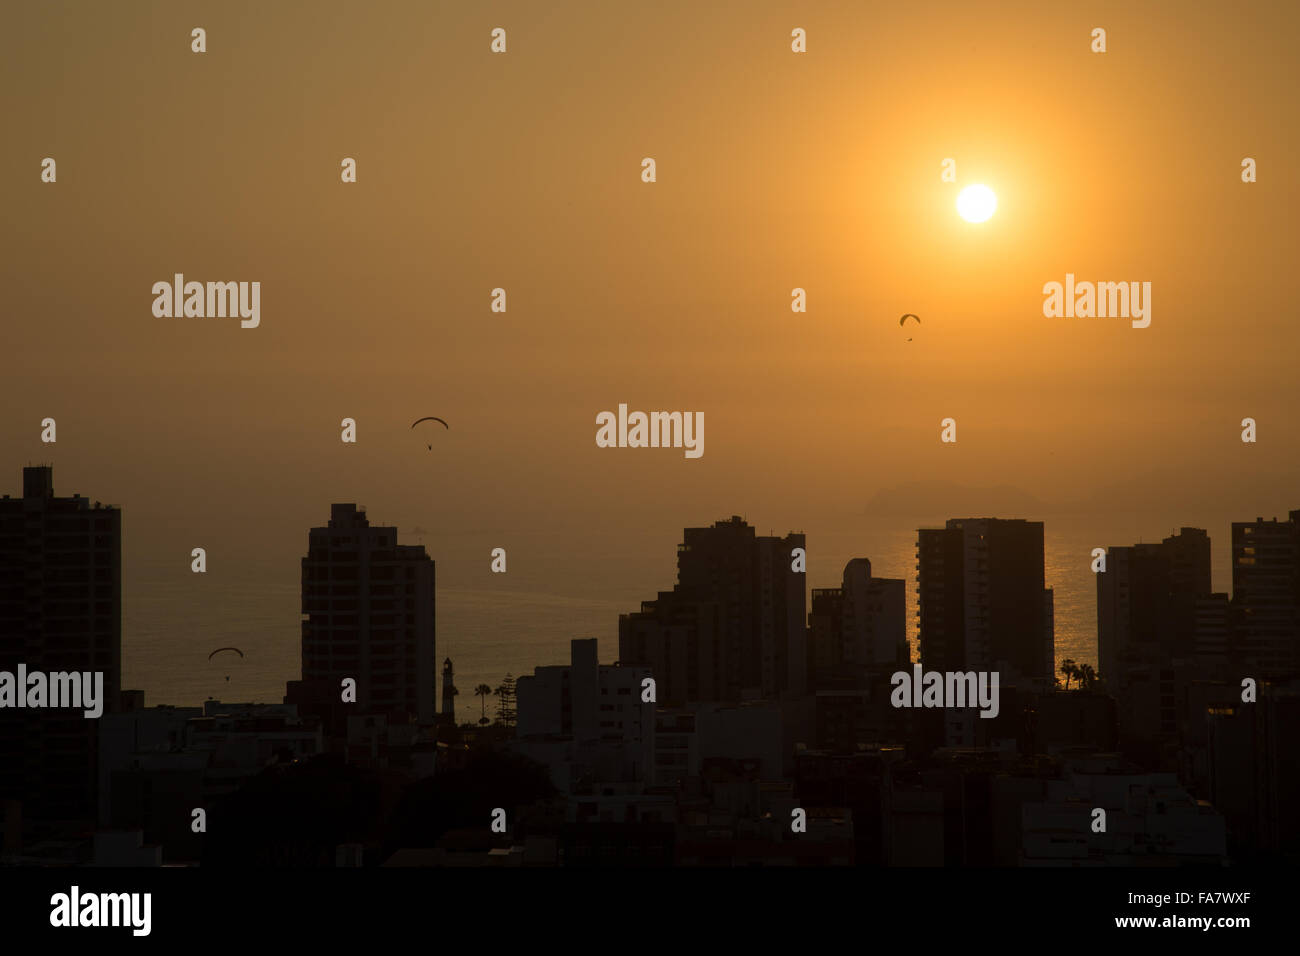 Photographie de parapentes pendant le coucher du soleil avec l'horizon du quartier Miraflores de Lima, Pérou. Banque D'Images